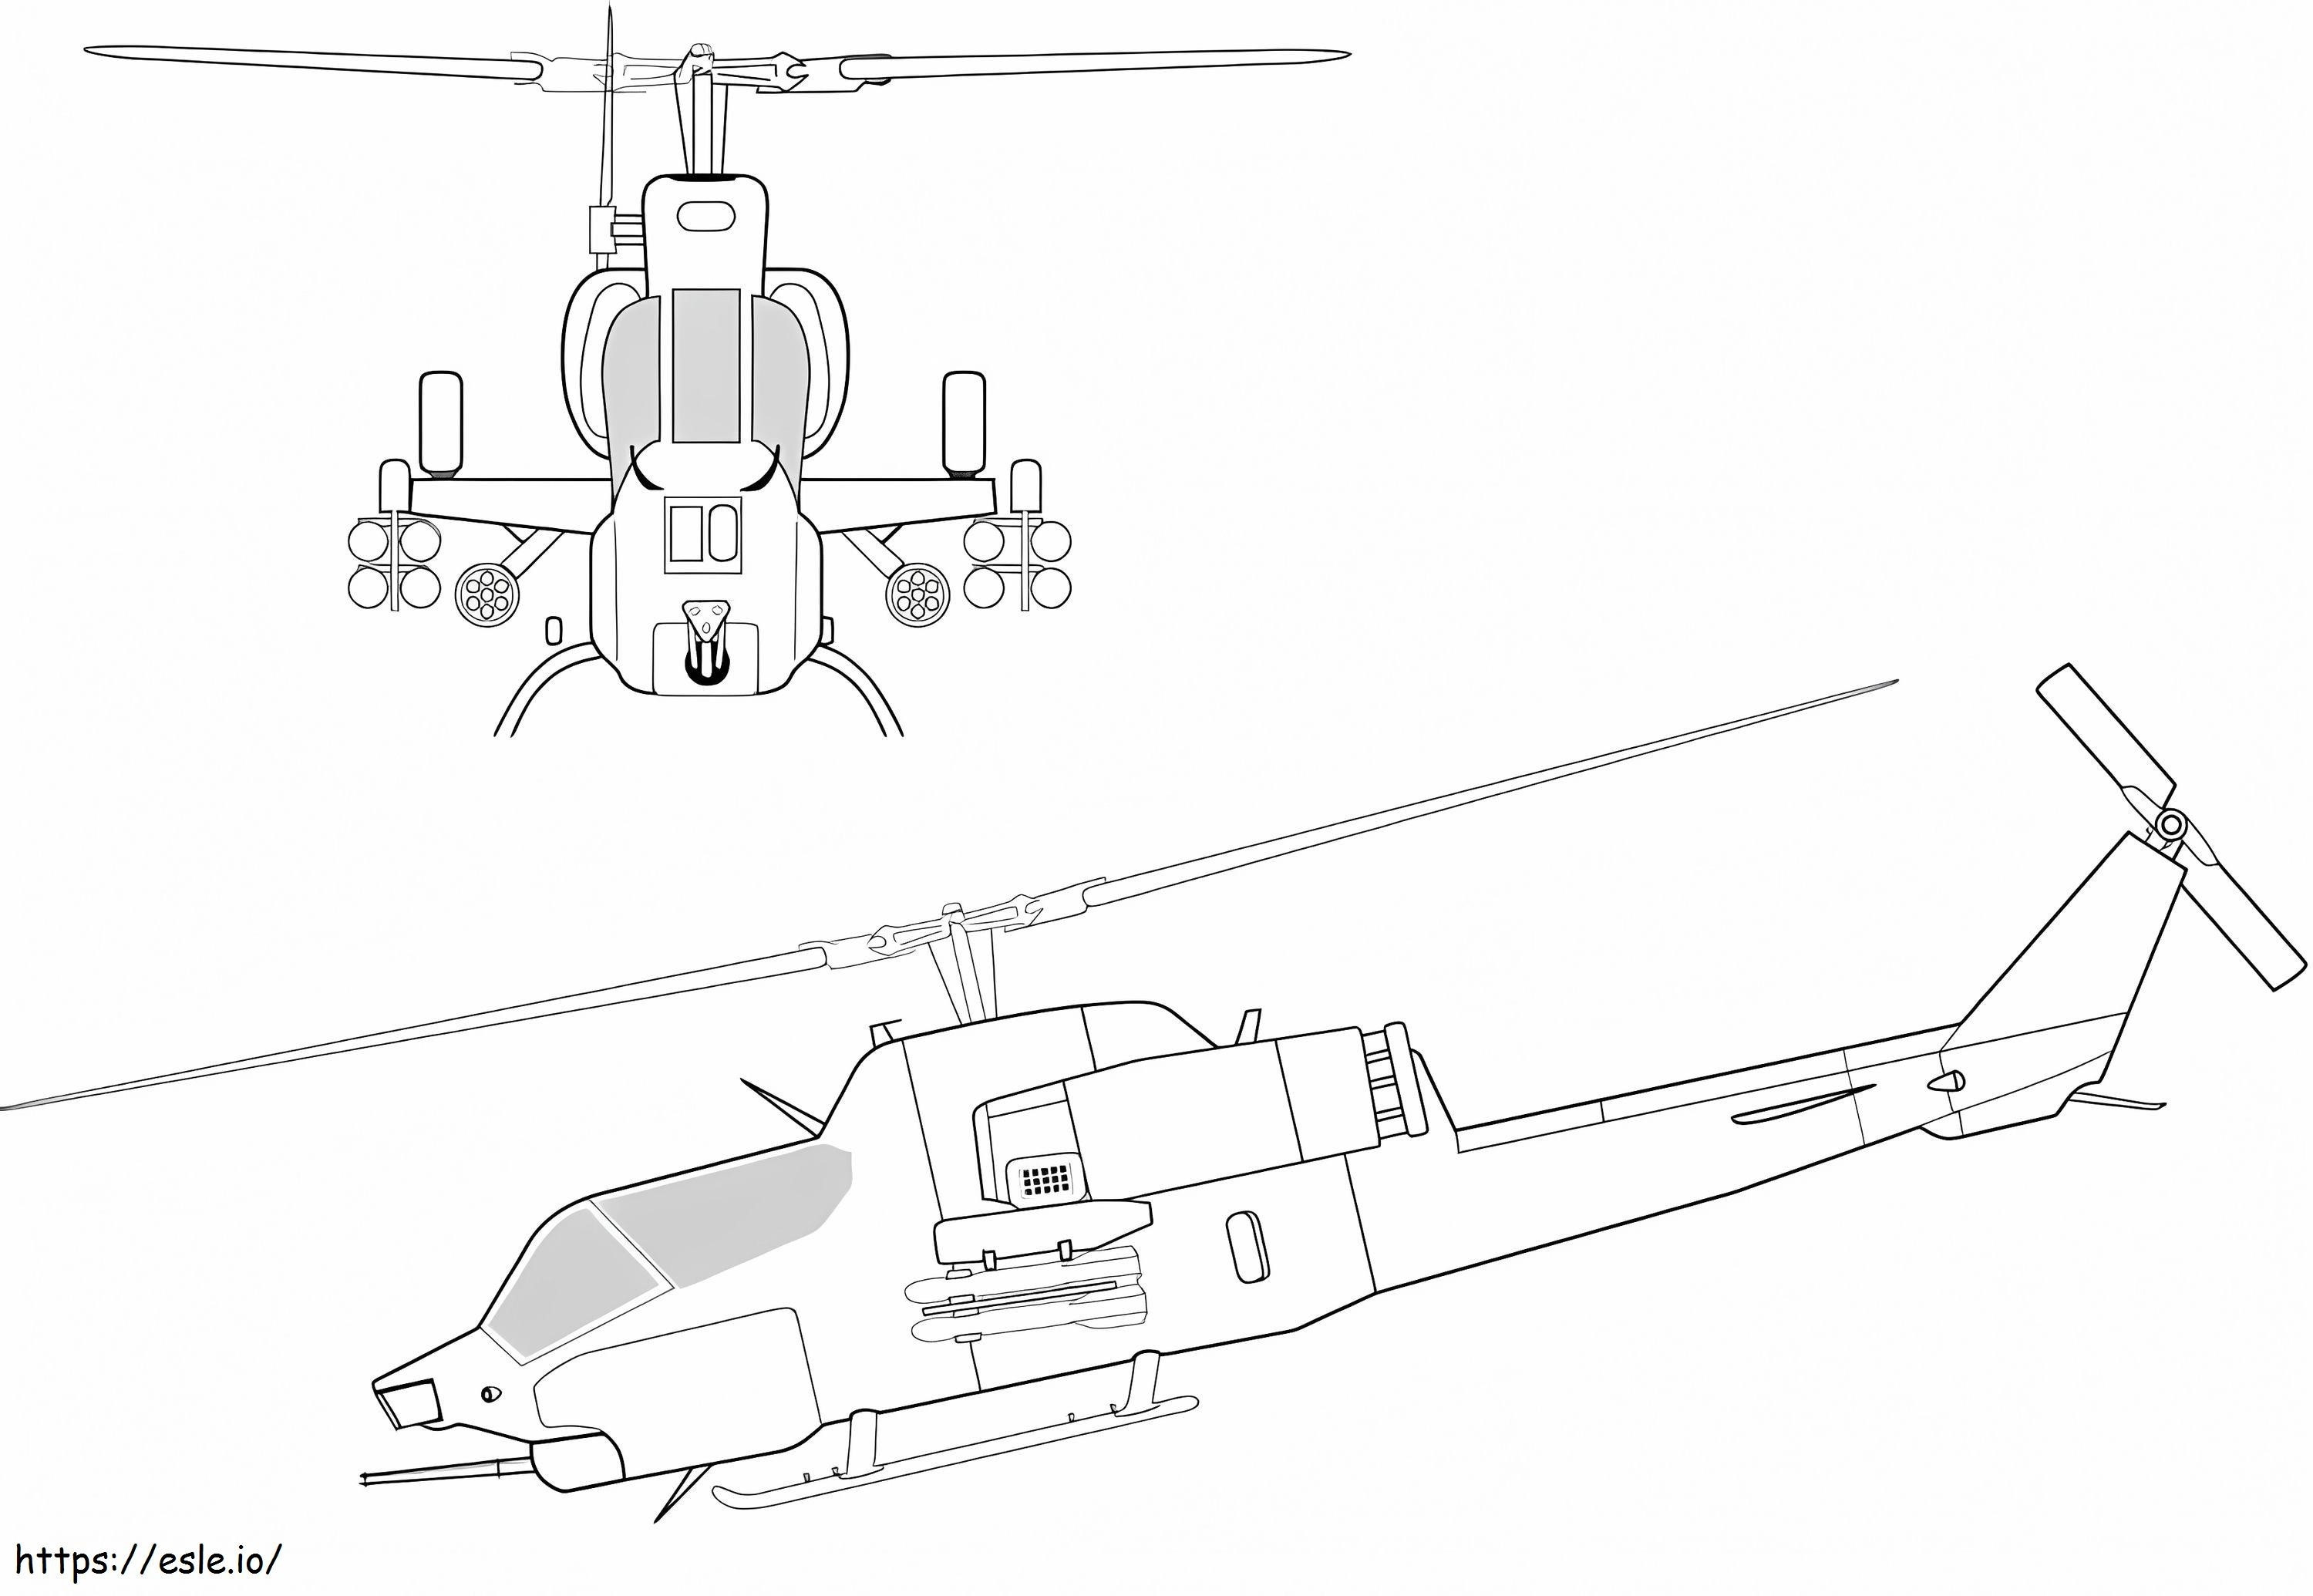 2機のヘリコプター ぬりえ - 塗り絵